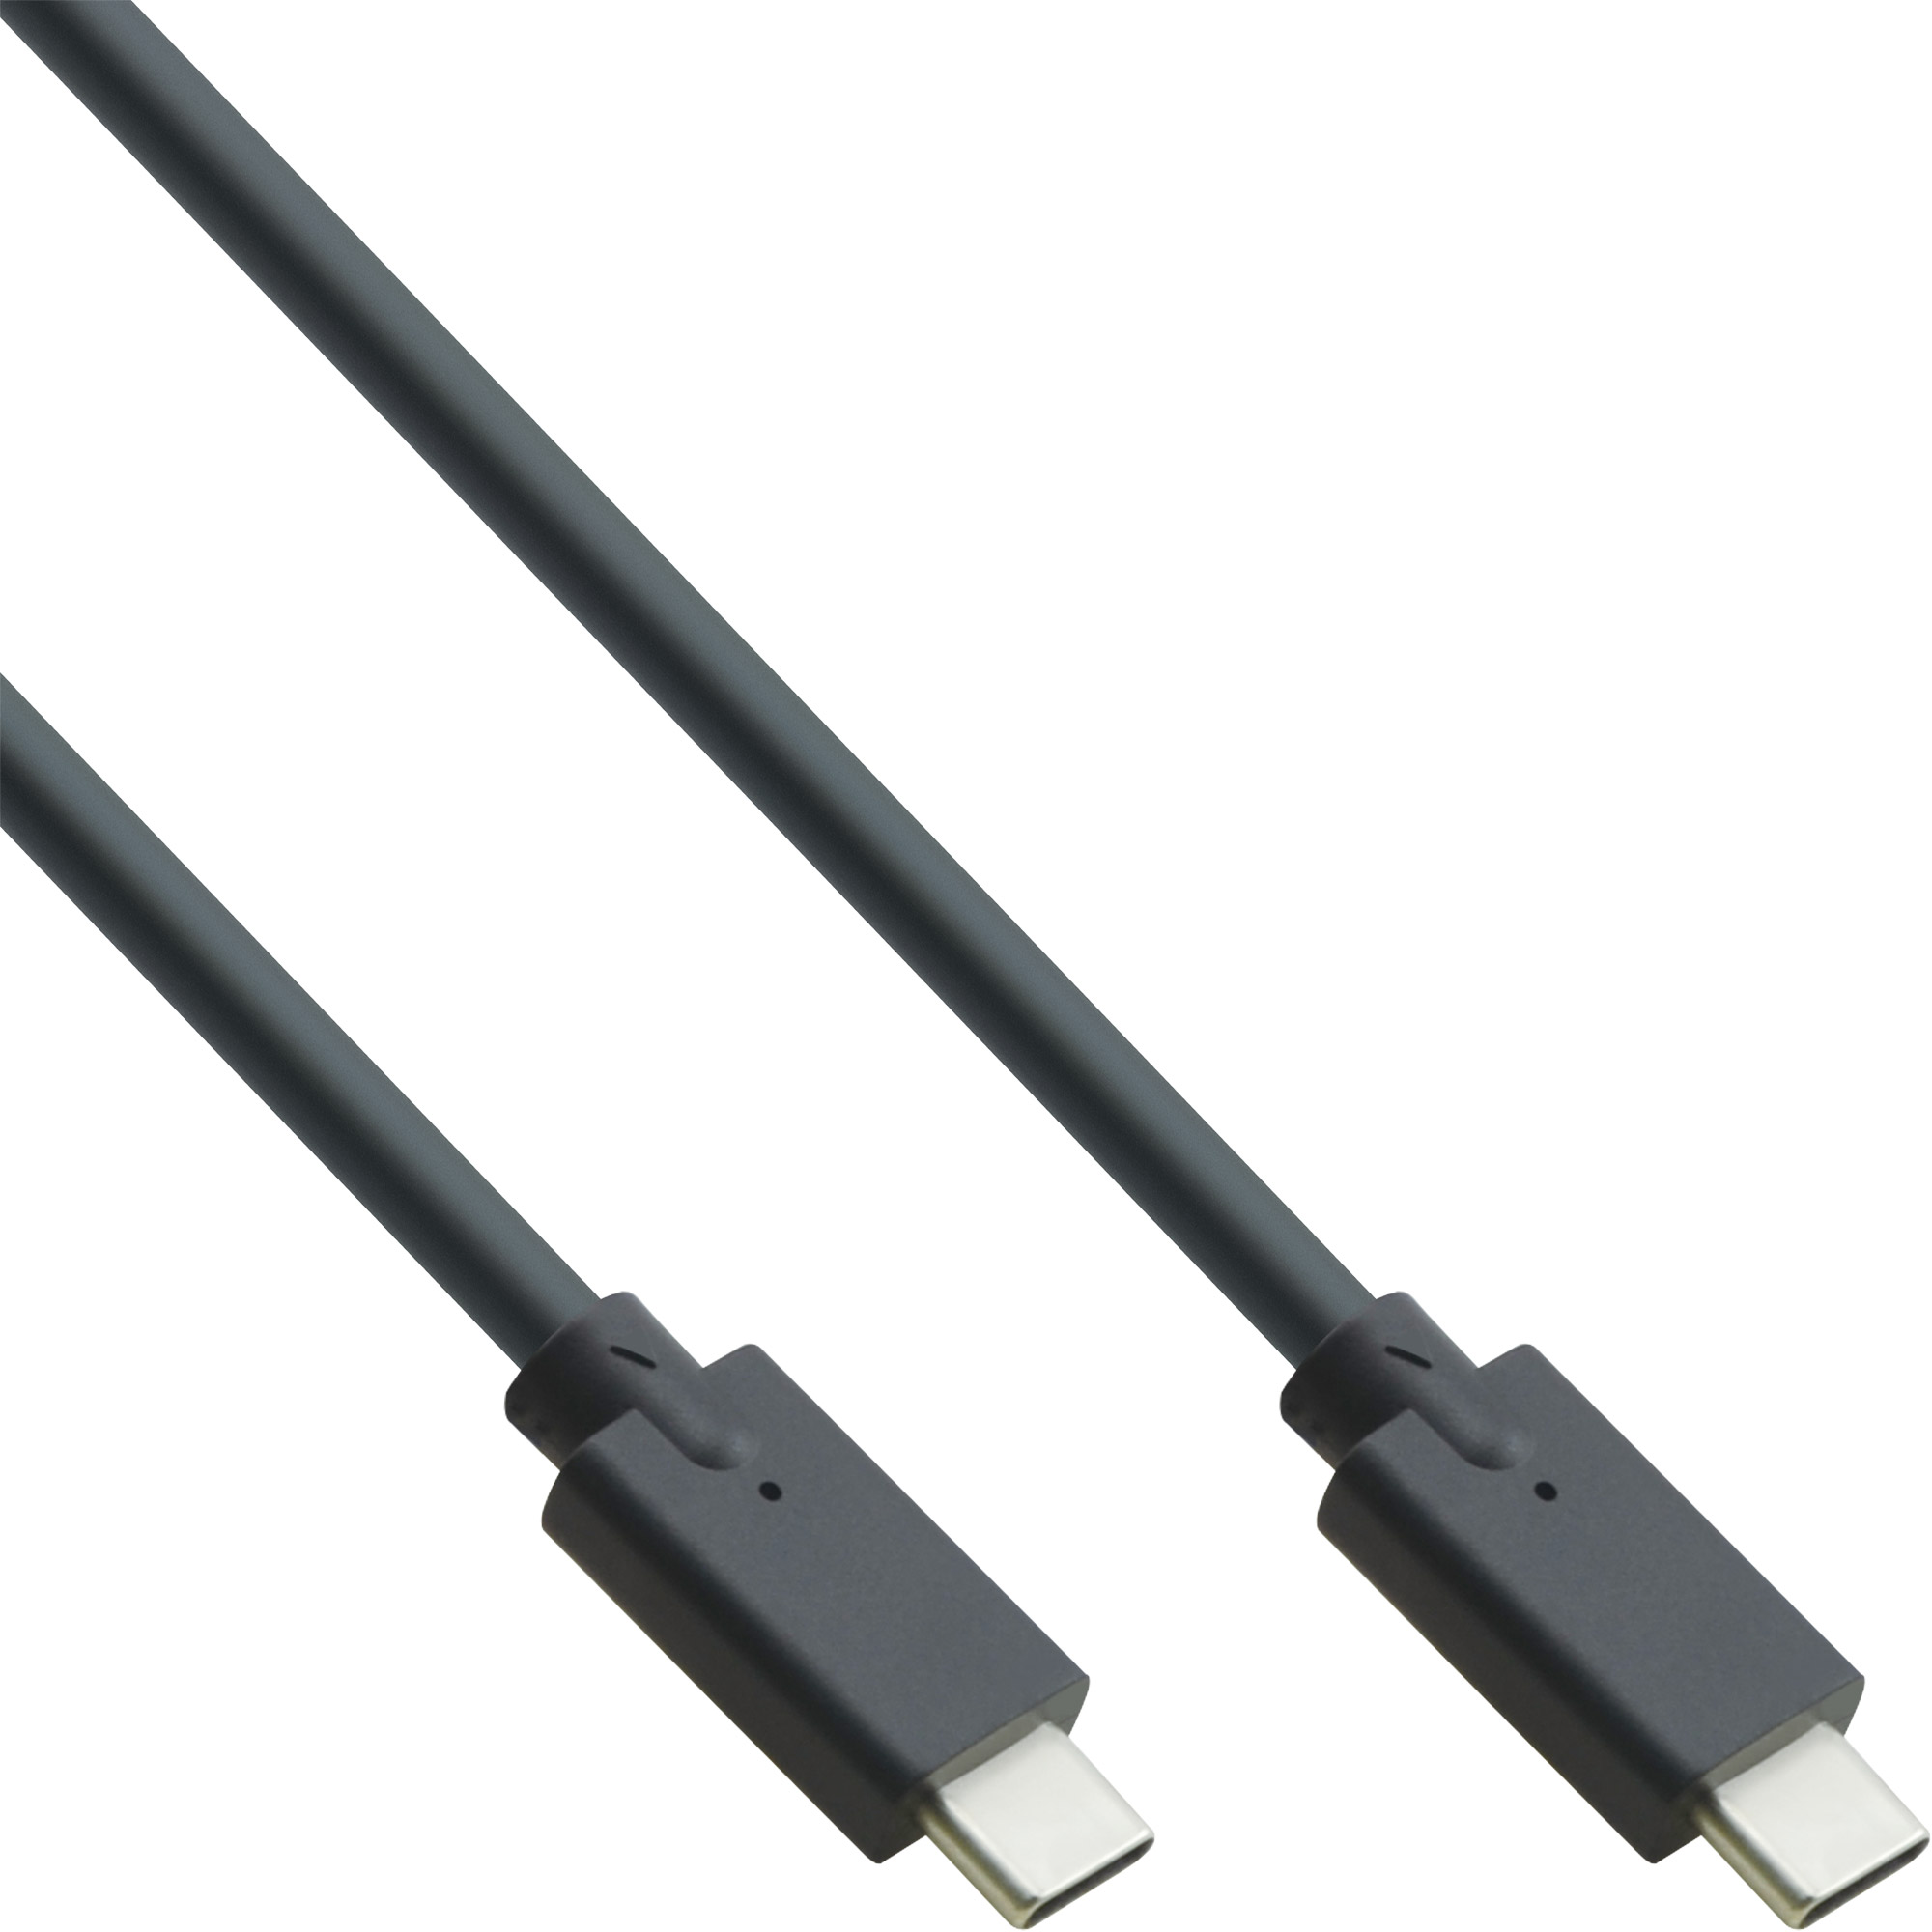 InLine® USB 3.2 Gen.2 Kabel, USB Typ-C Stecker/Stecker, schwarz, 2m